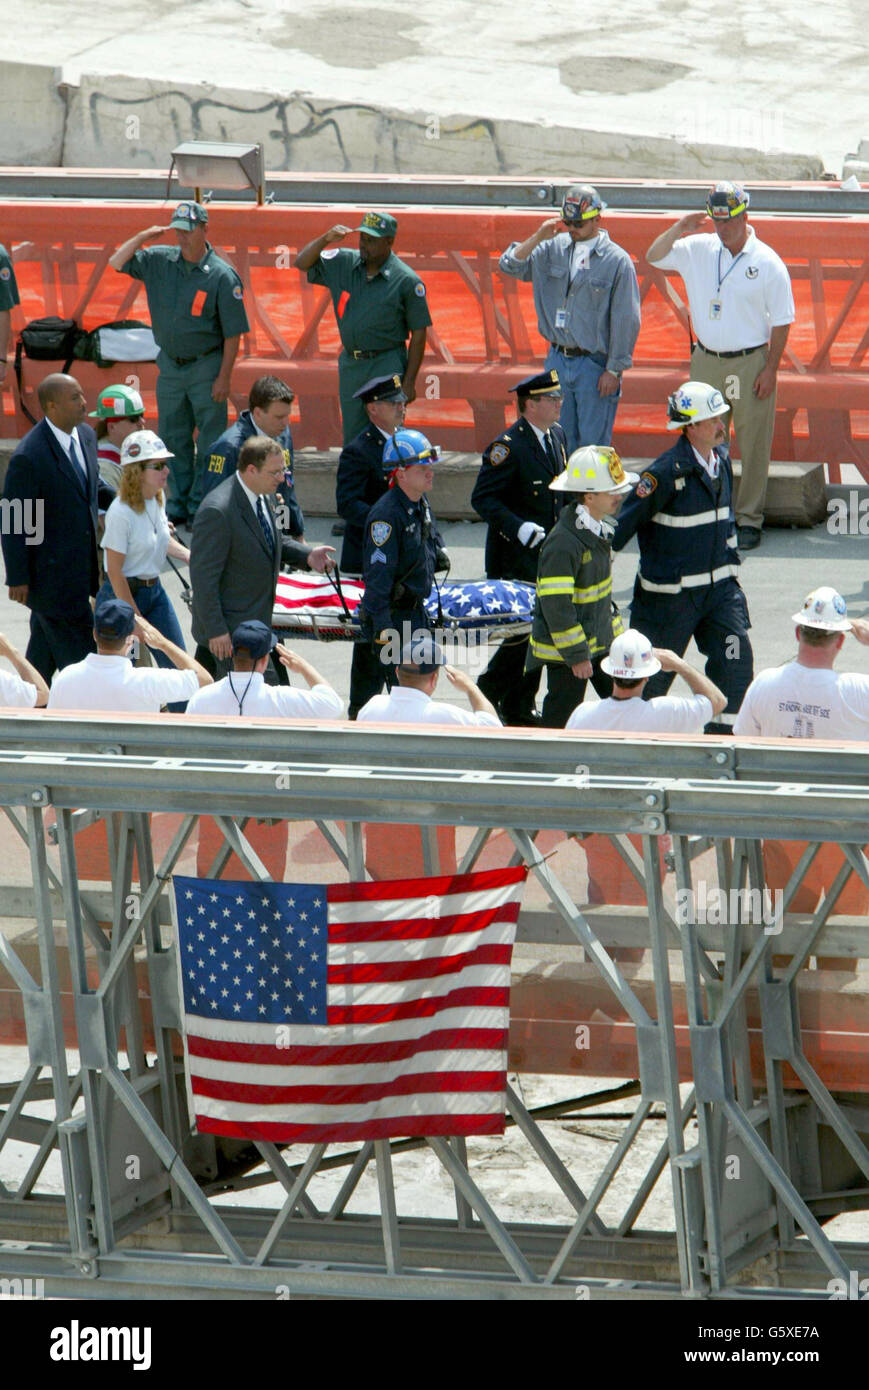 Une civière vide, pour symboliser les restes non récupérés de victimes encore disparues du 11 septembre, est transportée vers une ambulance d'attente au cours d'une cérémonie pour mettre officiellement fin à l'effort de rétablissement au site du World Trade Center à New York. Banque D'Images